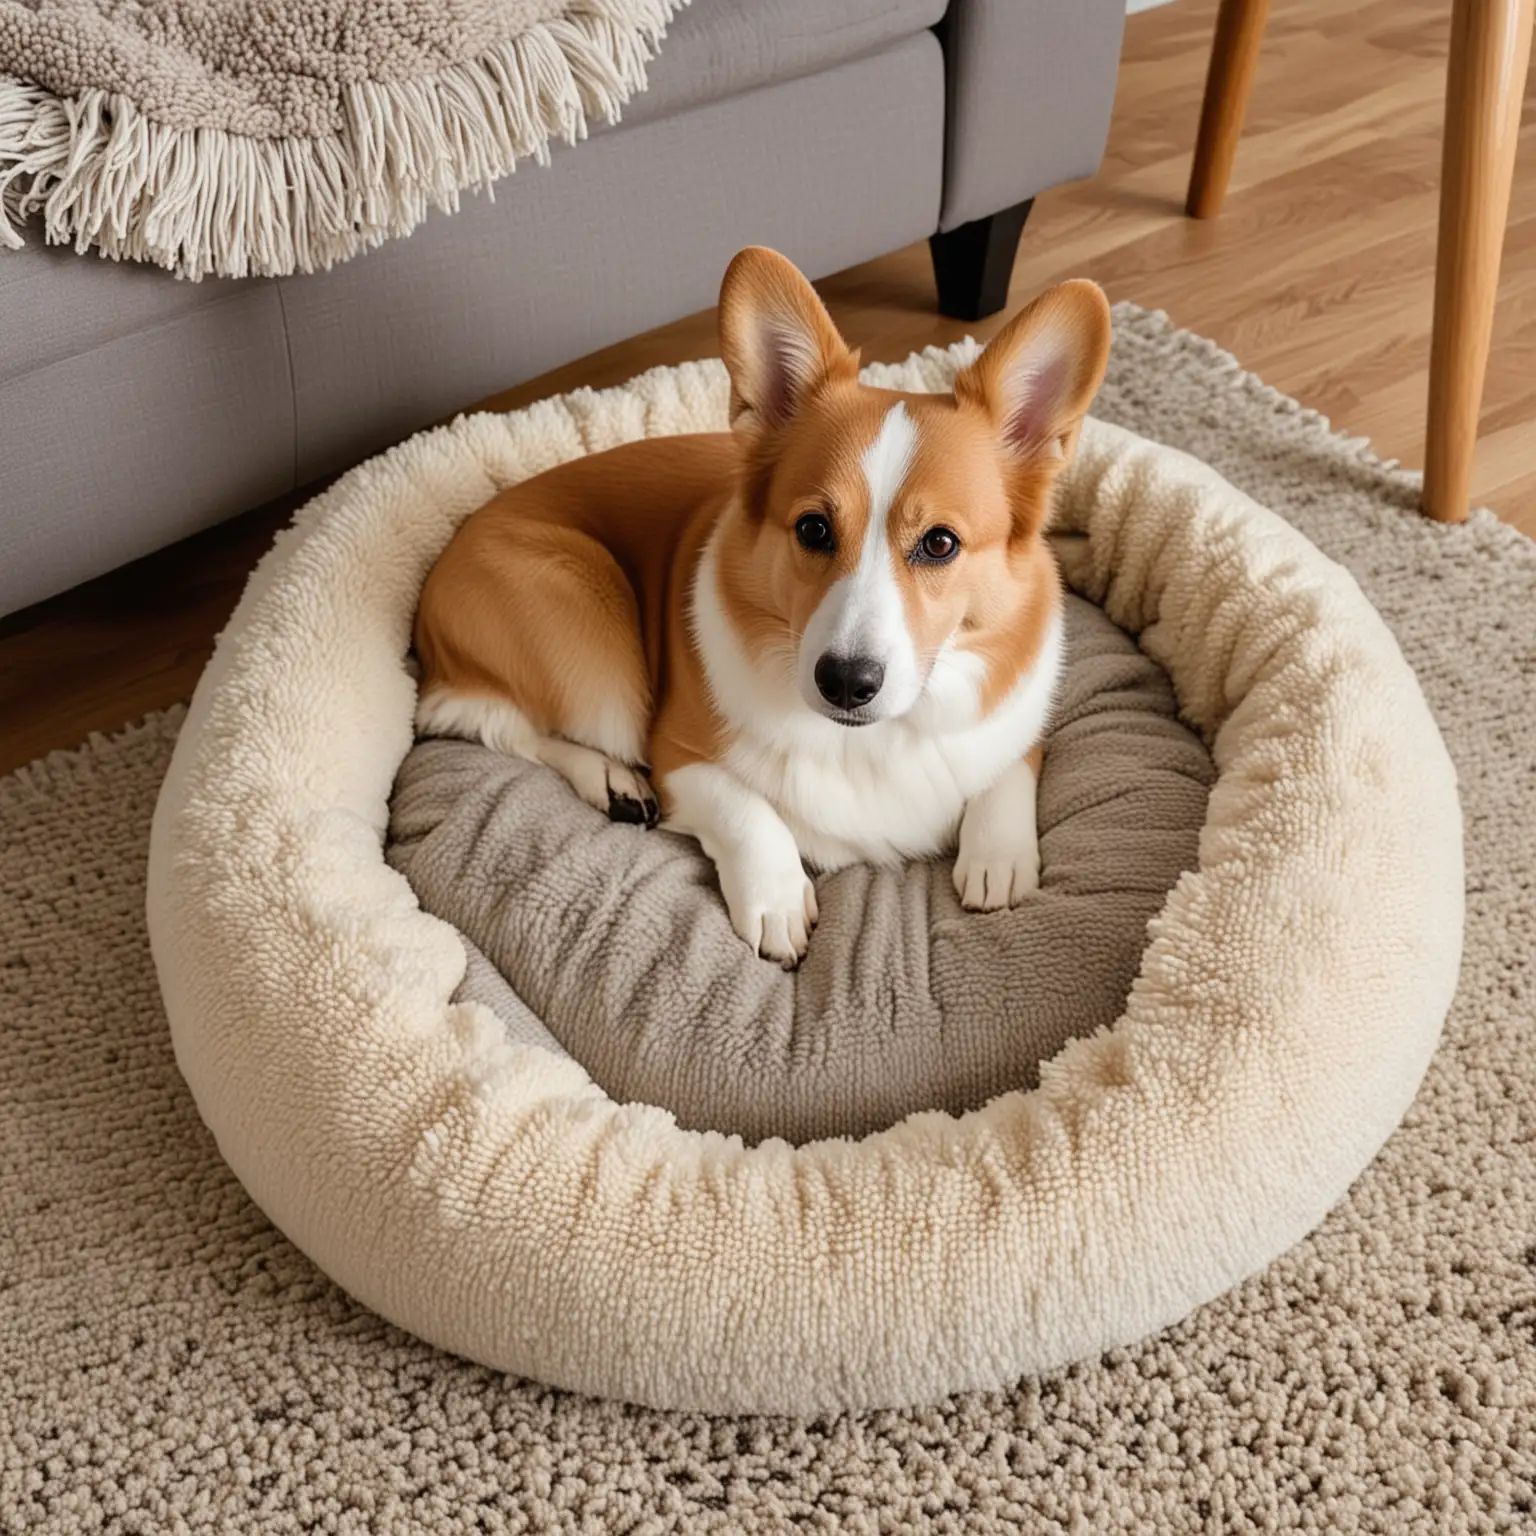 a corgi curled up in a dog bed on a rug in the living room